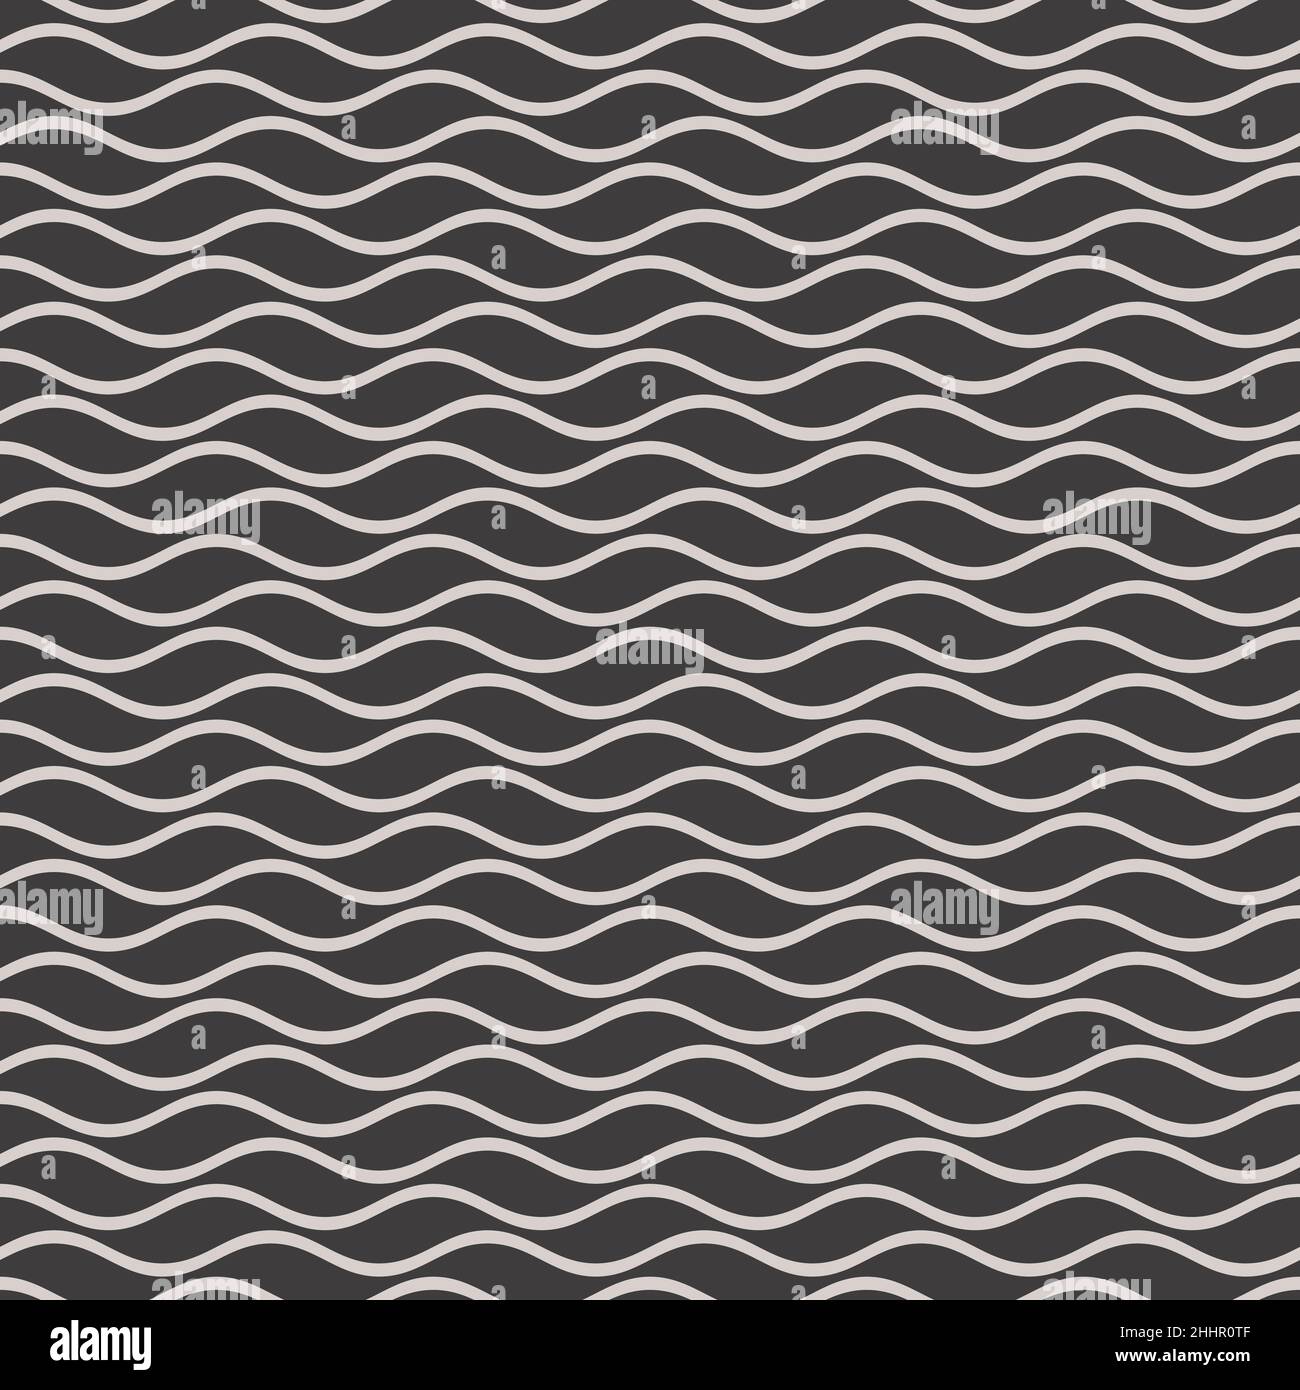 Linee ondulate sfondo senza giunture in bianco e nero. Modello vettoriale a tessere. Illustrazione Vettoriale